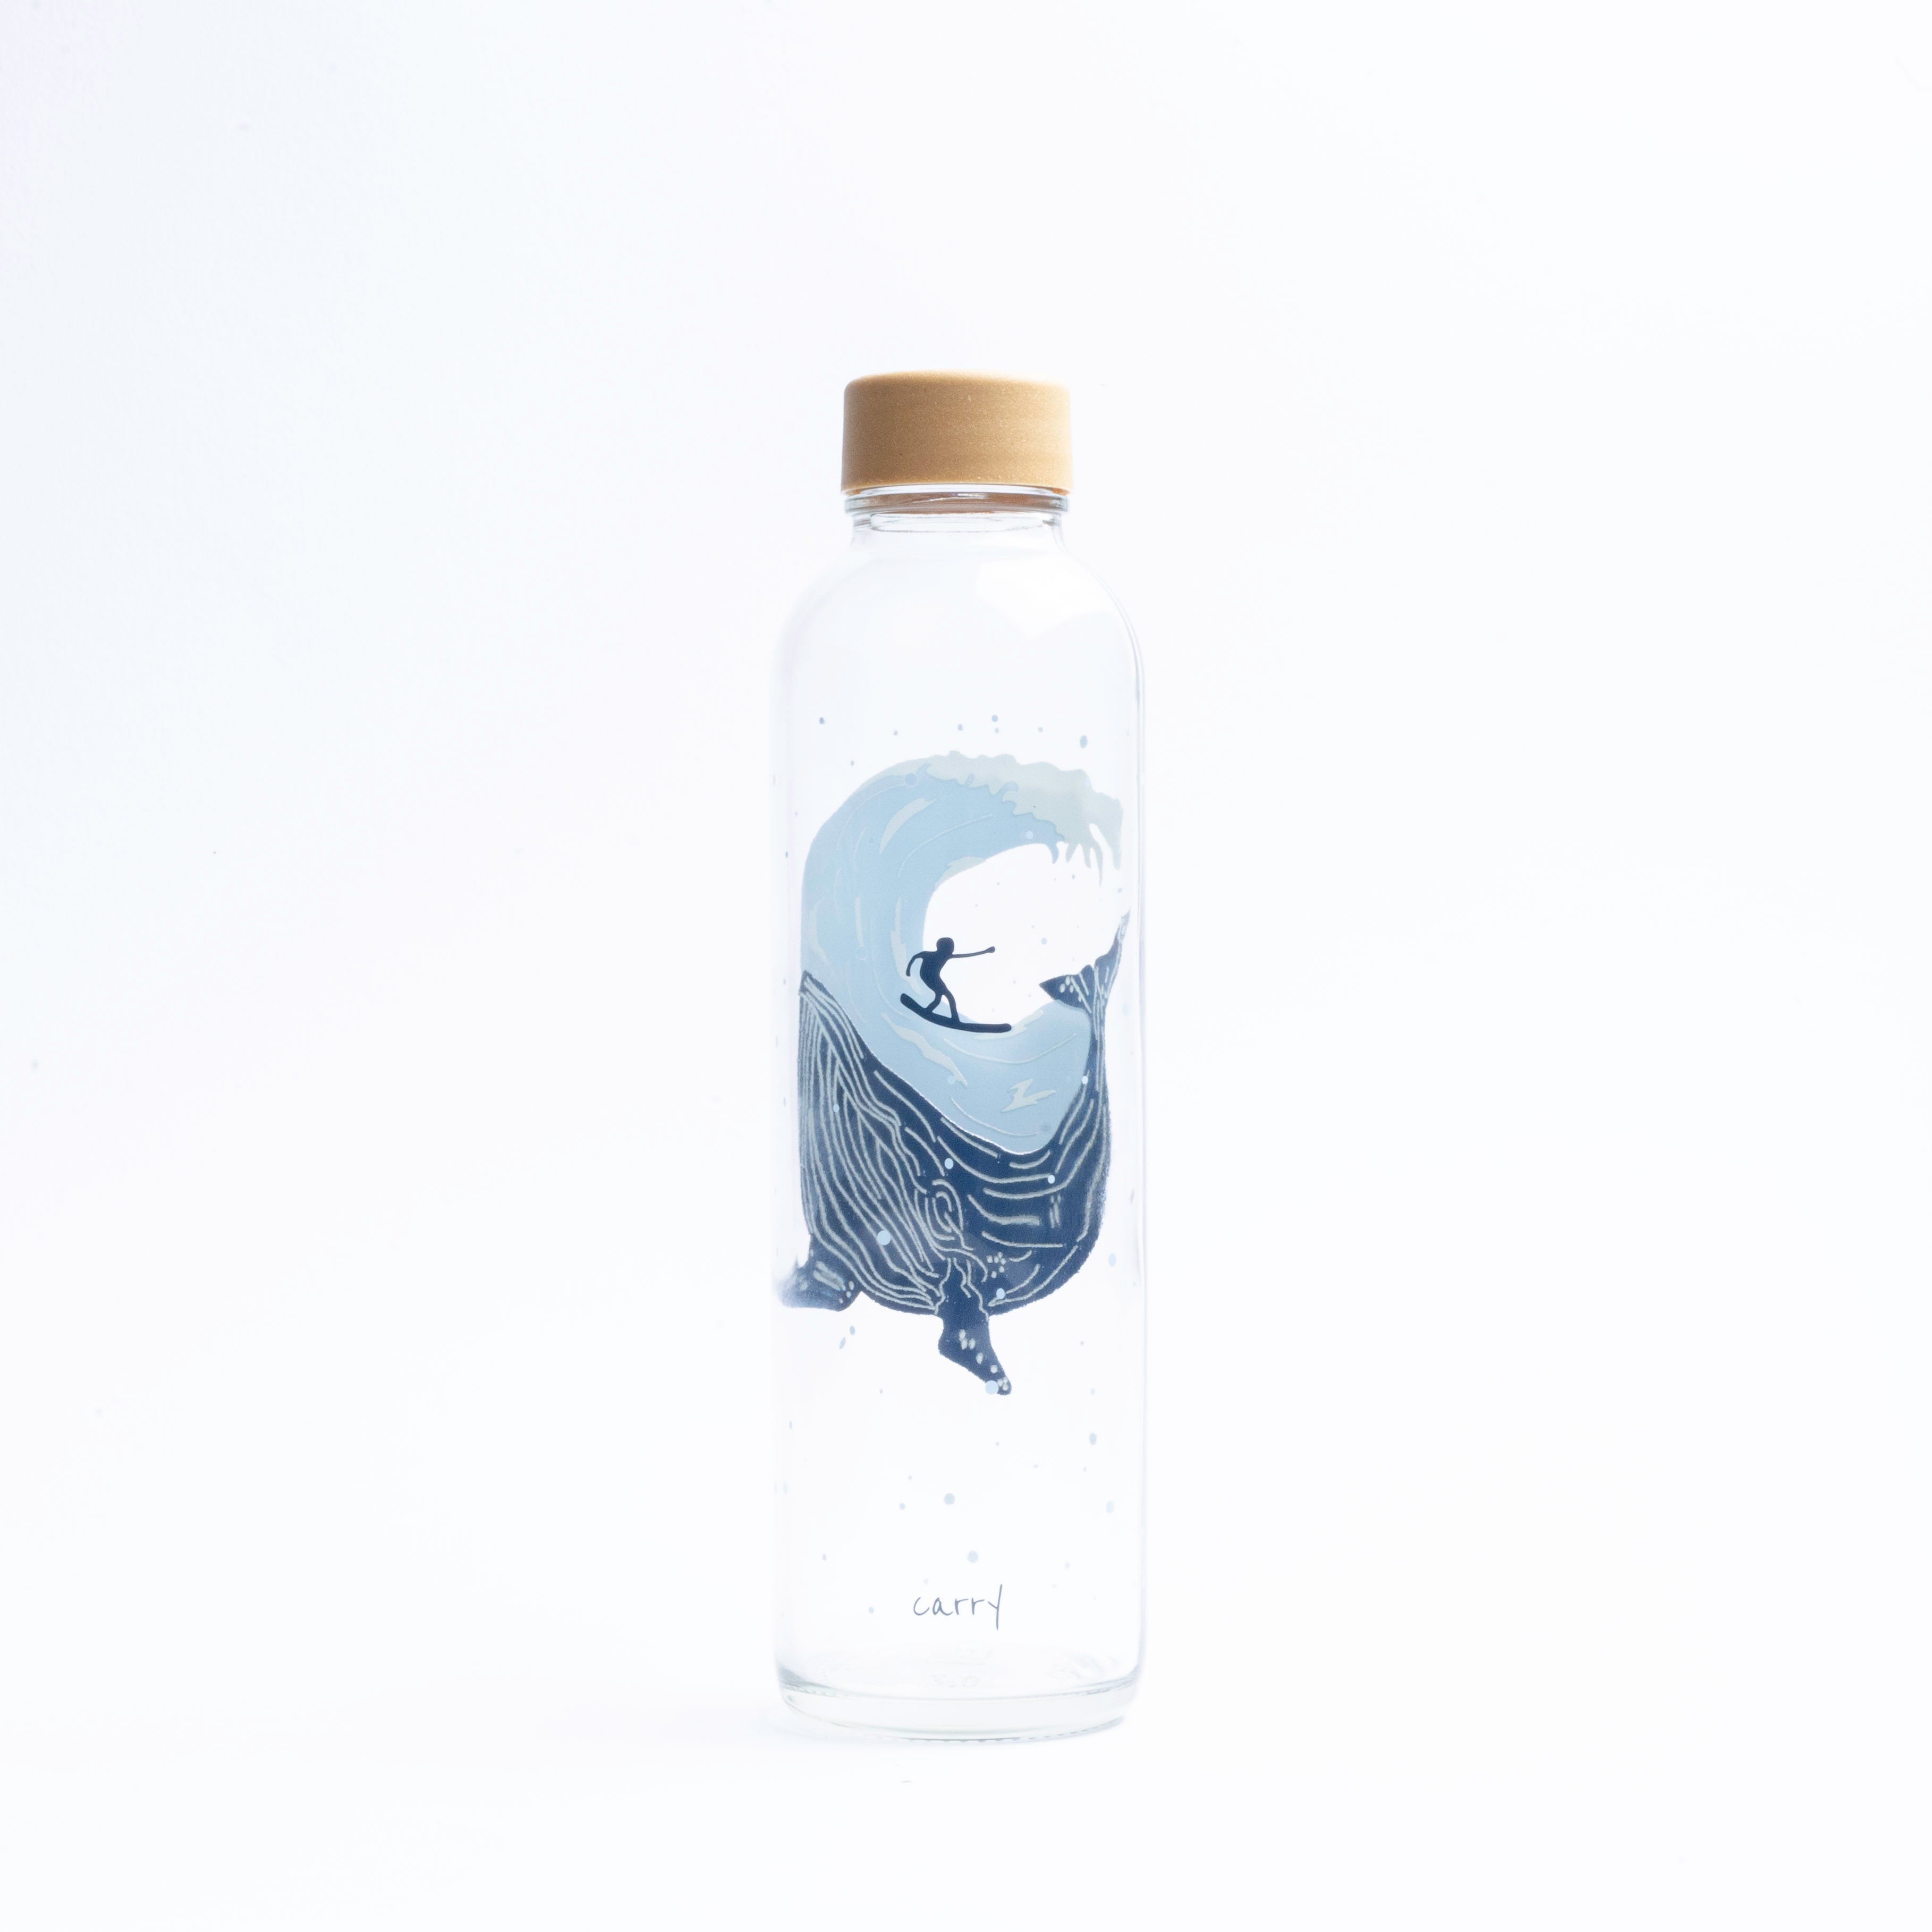 Glastrinkflasche mit Wal und Surfer mit Deckel